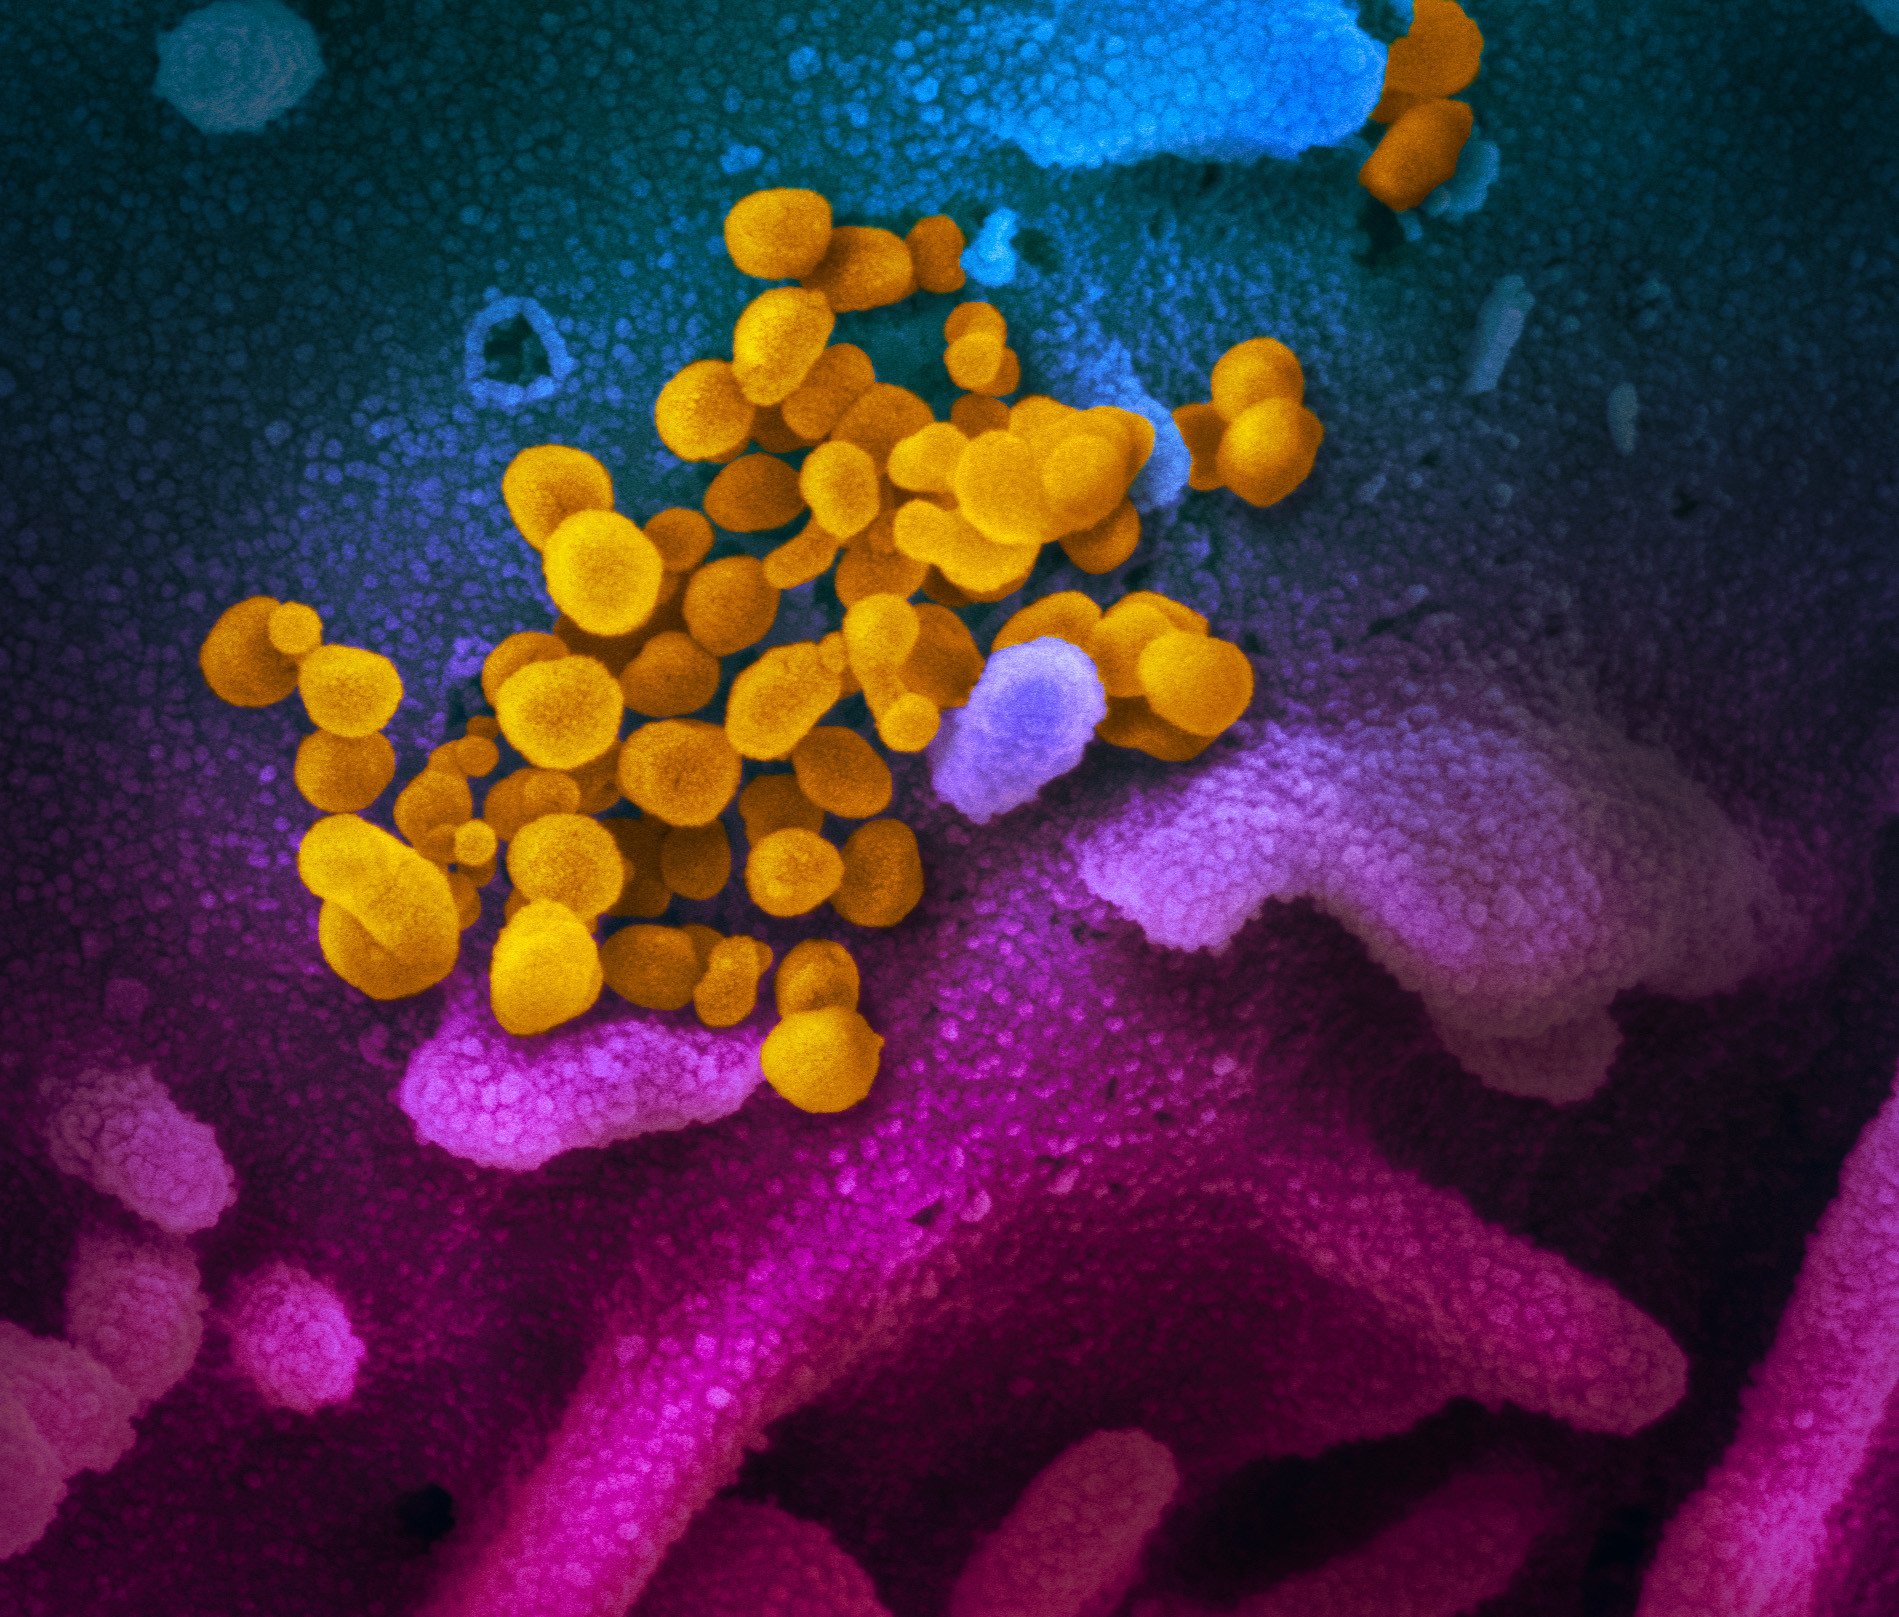 驚くほど芸術的なものだった、新型コロナウイルスの顕微鏡下での姿が公開される